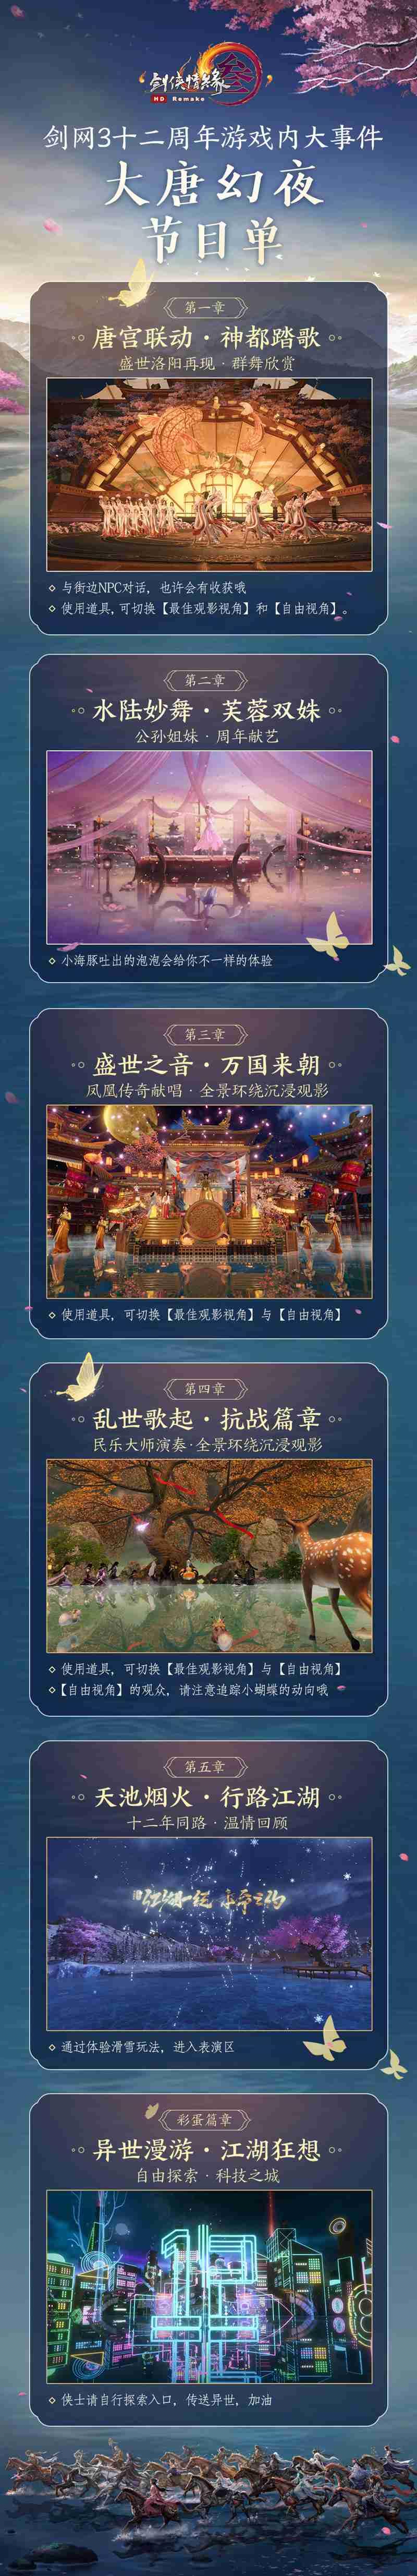 《剑网3》十二周年大事件精彩第三弹 国乐大师演绎音绘江湖